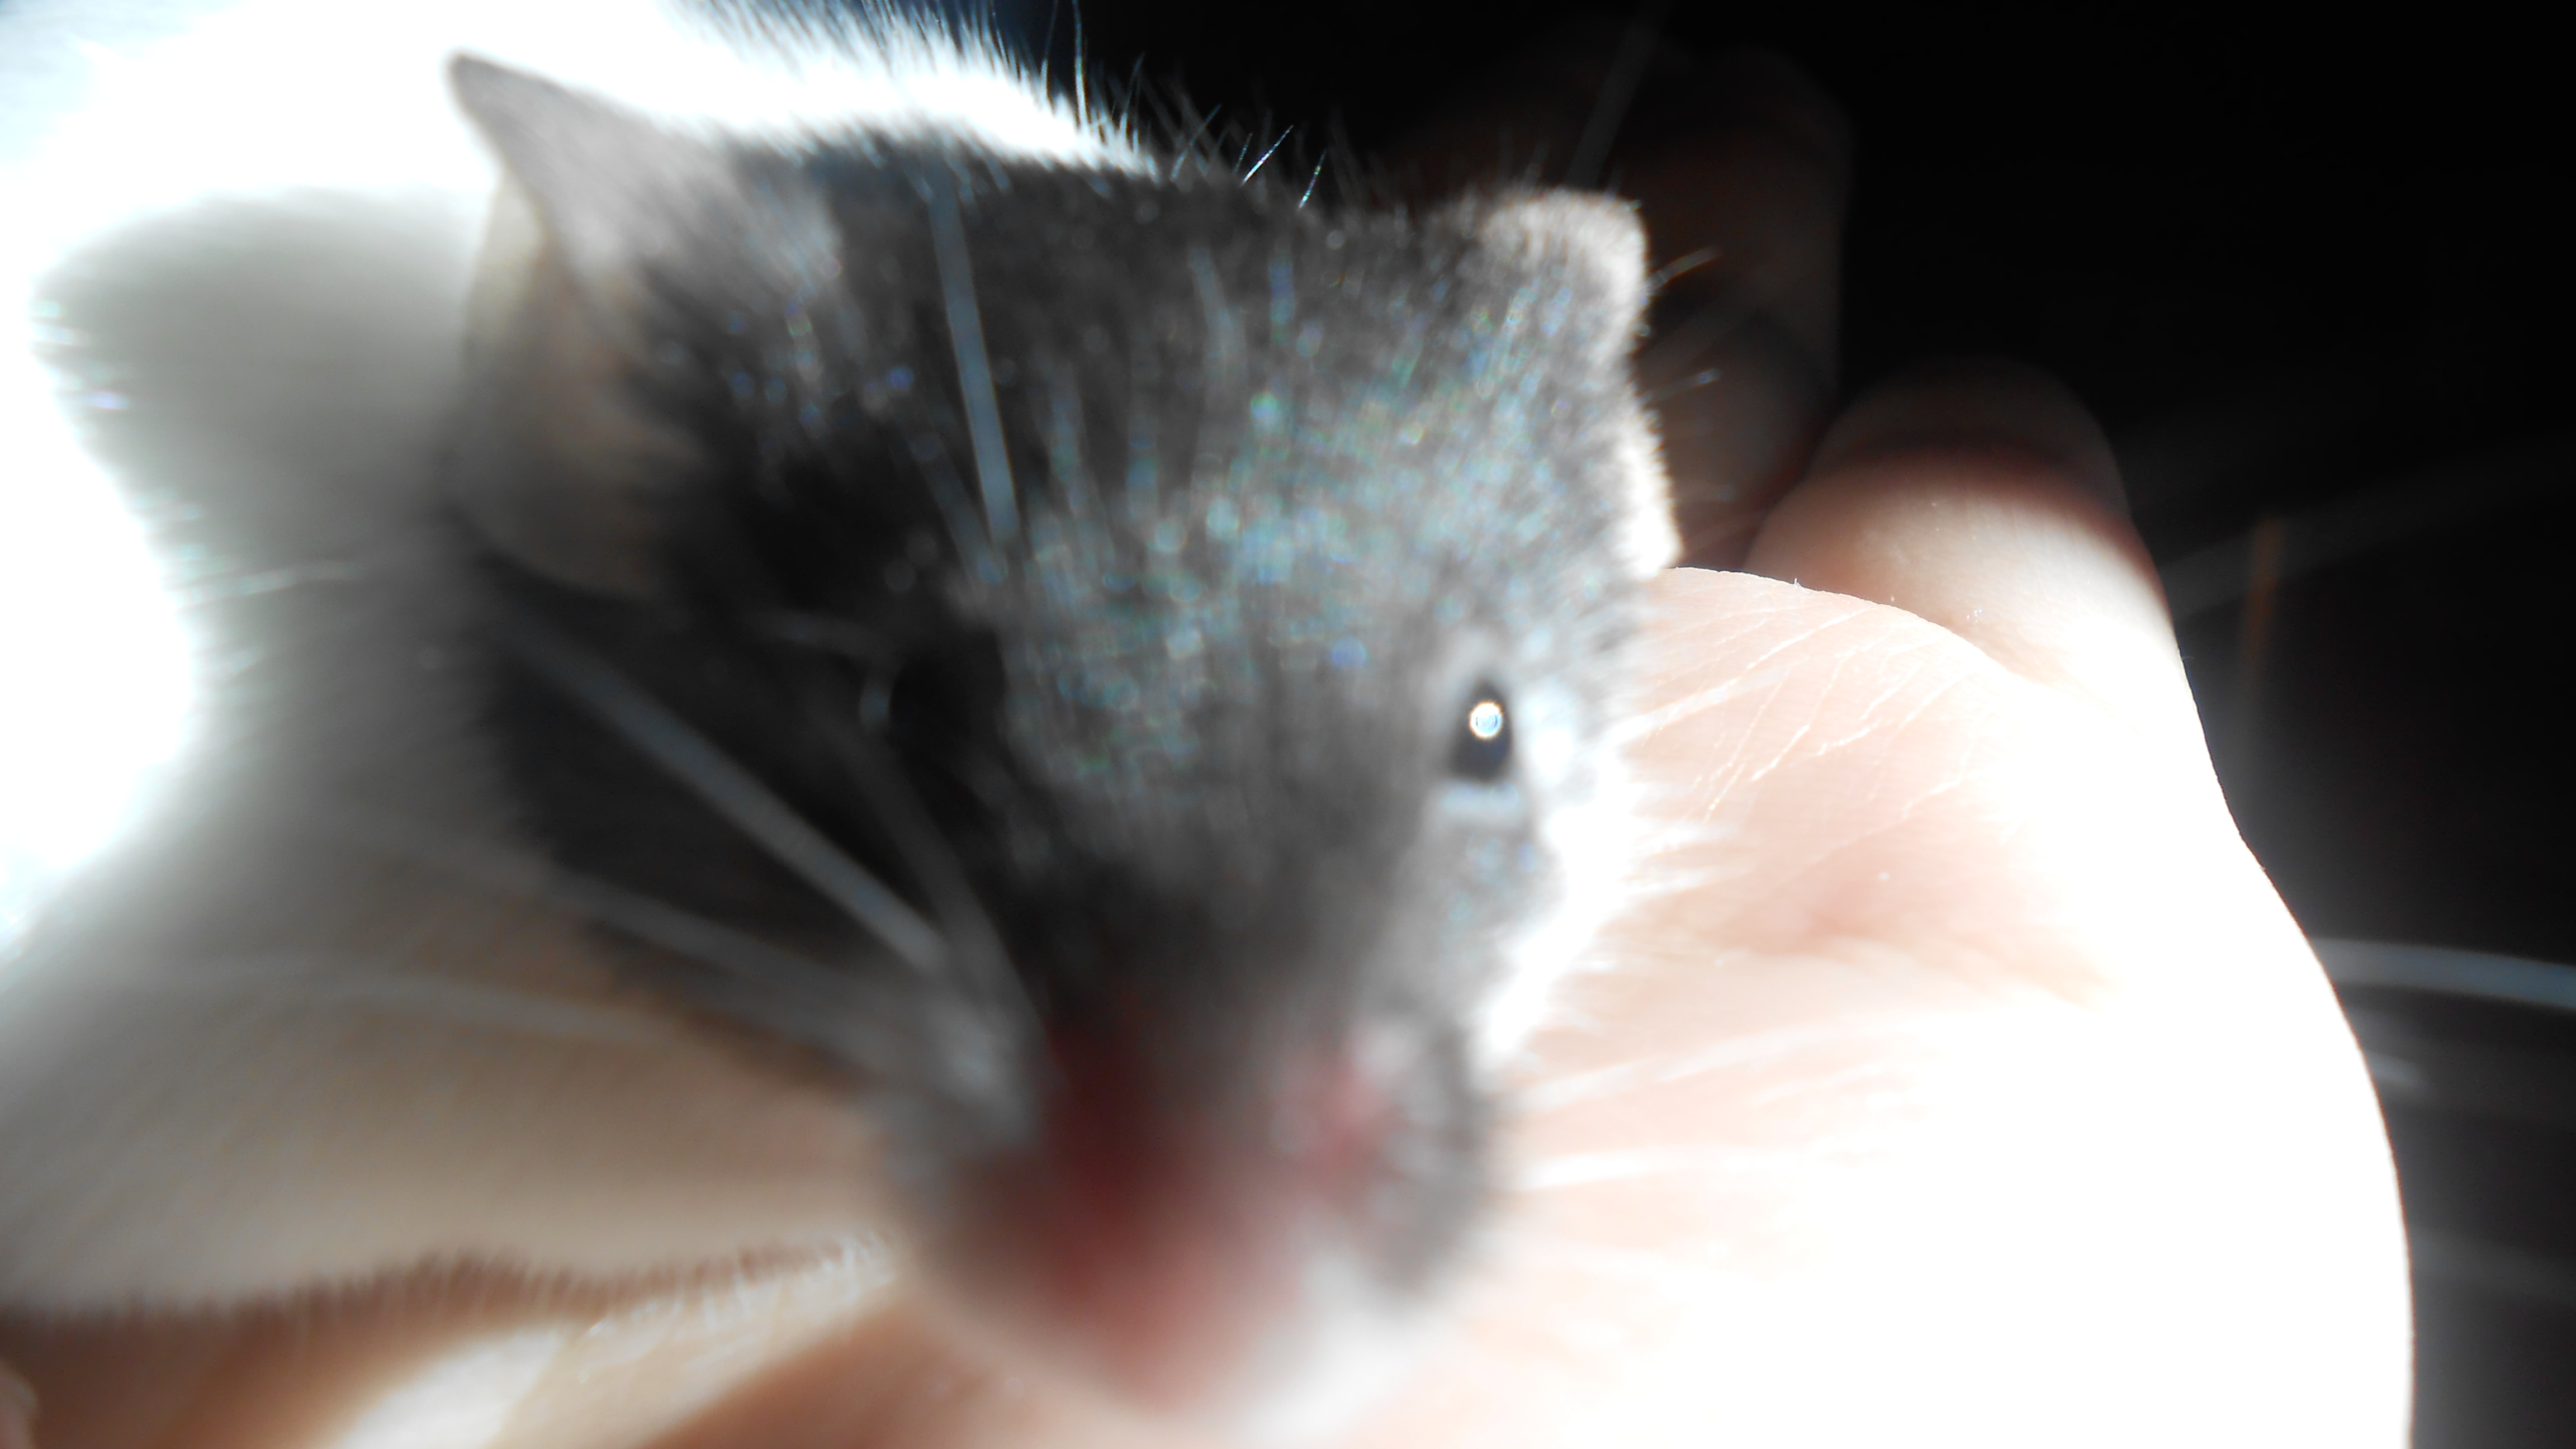 Dan my mousey